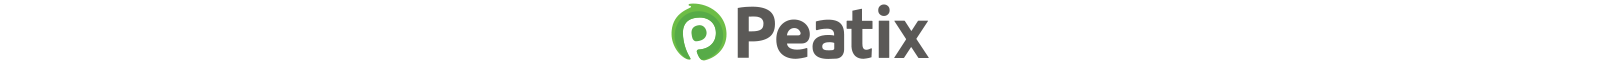 peatix-banner2